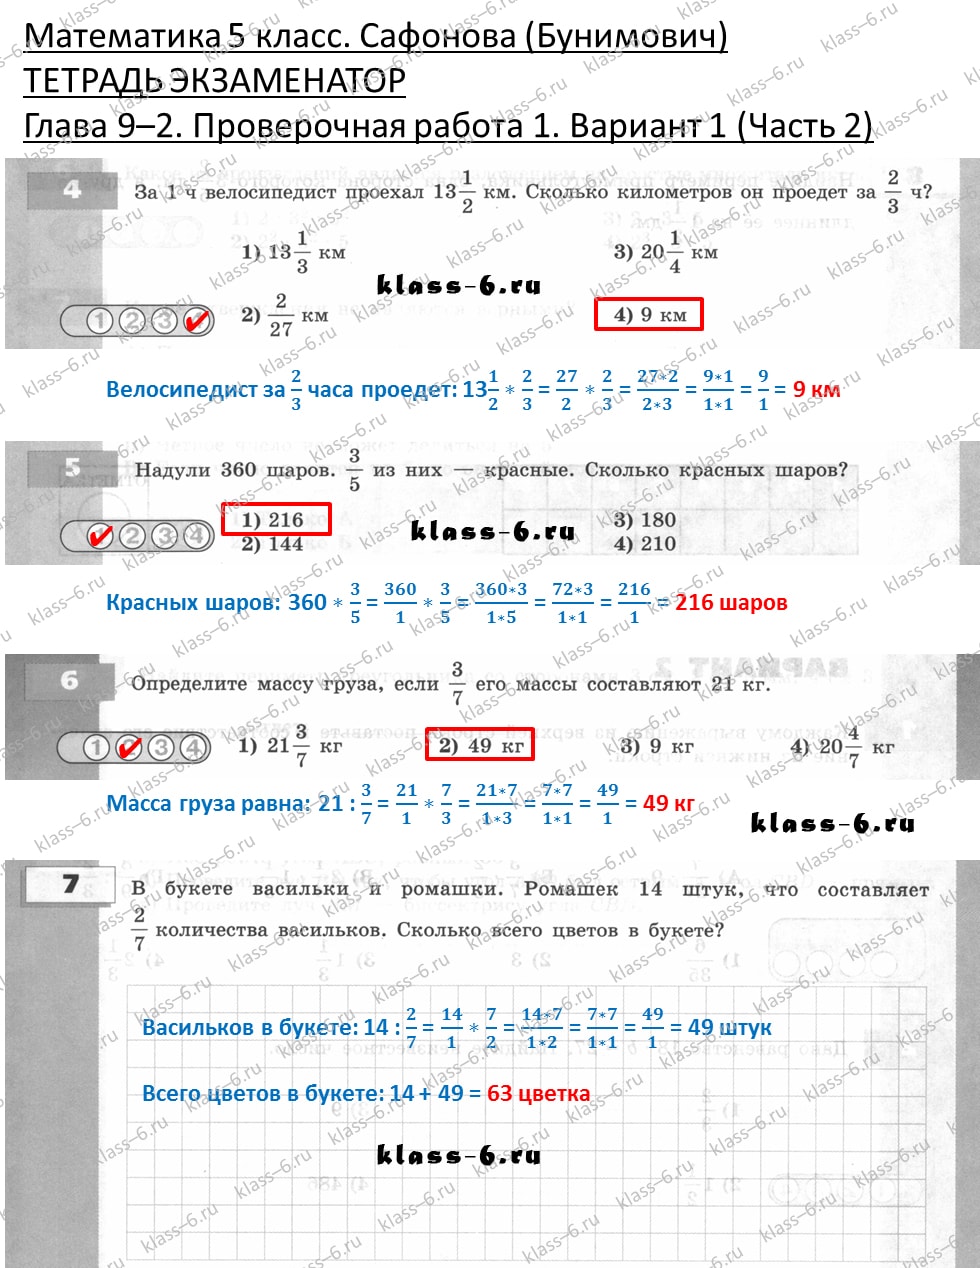 решебник и гдз по математике тетрадь экзаменатор Сафонова, Бунимович 5 класс глава 9 (2) контрольная работа 1 вариант 1 (2)